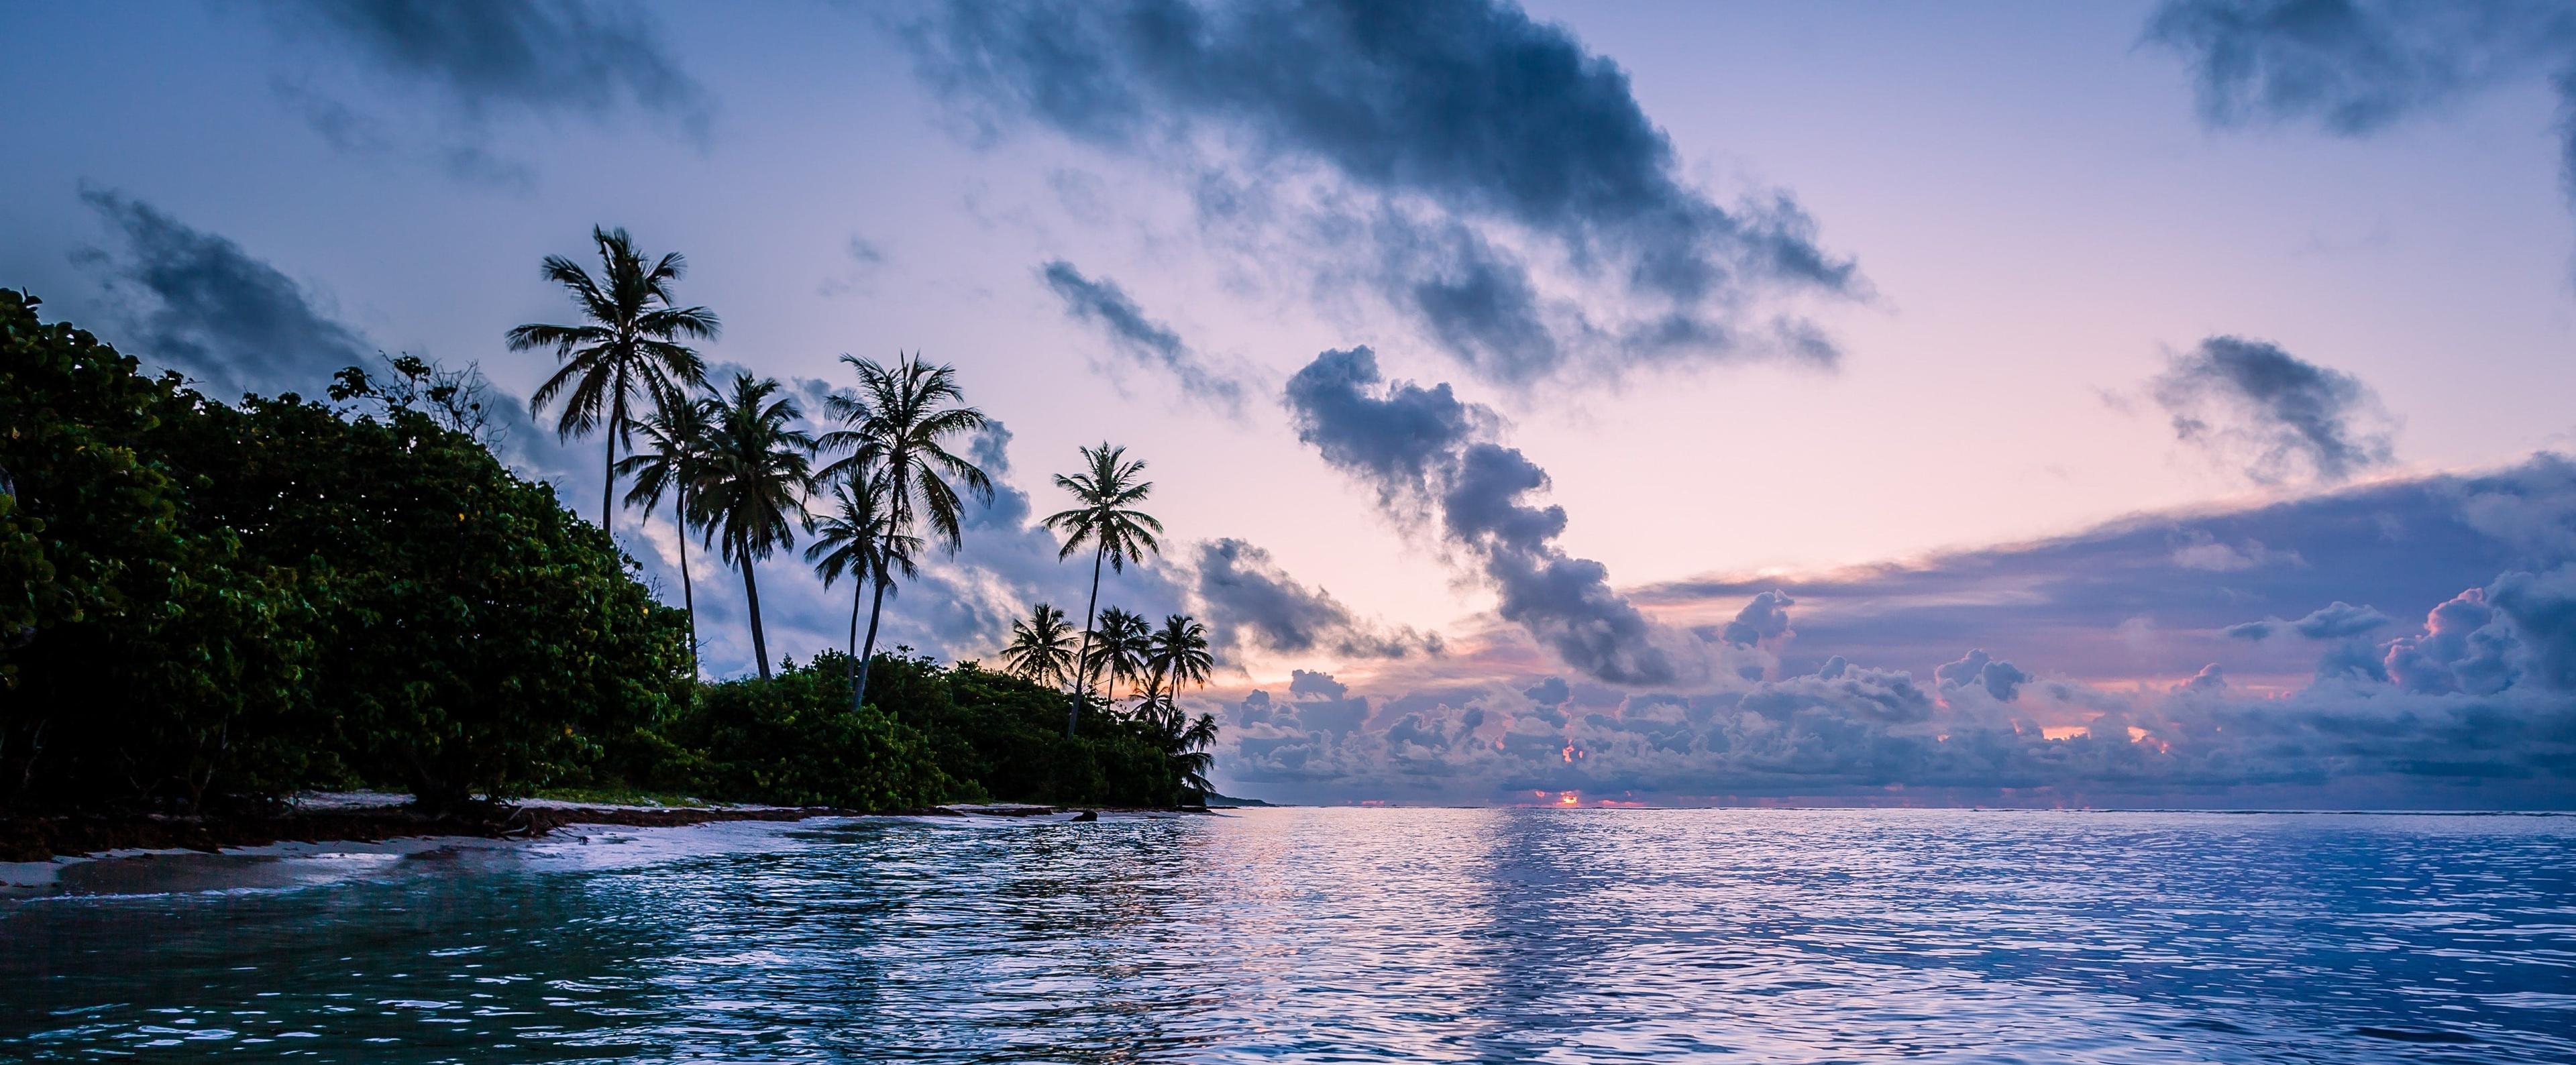 Küste von Martinique in romantischem Abendlicht, klares Wasser und Palmen